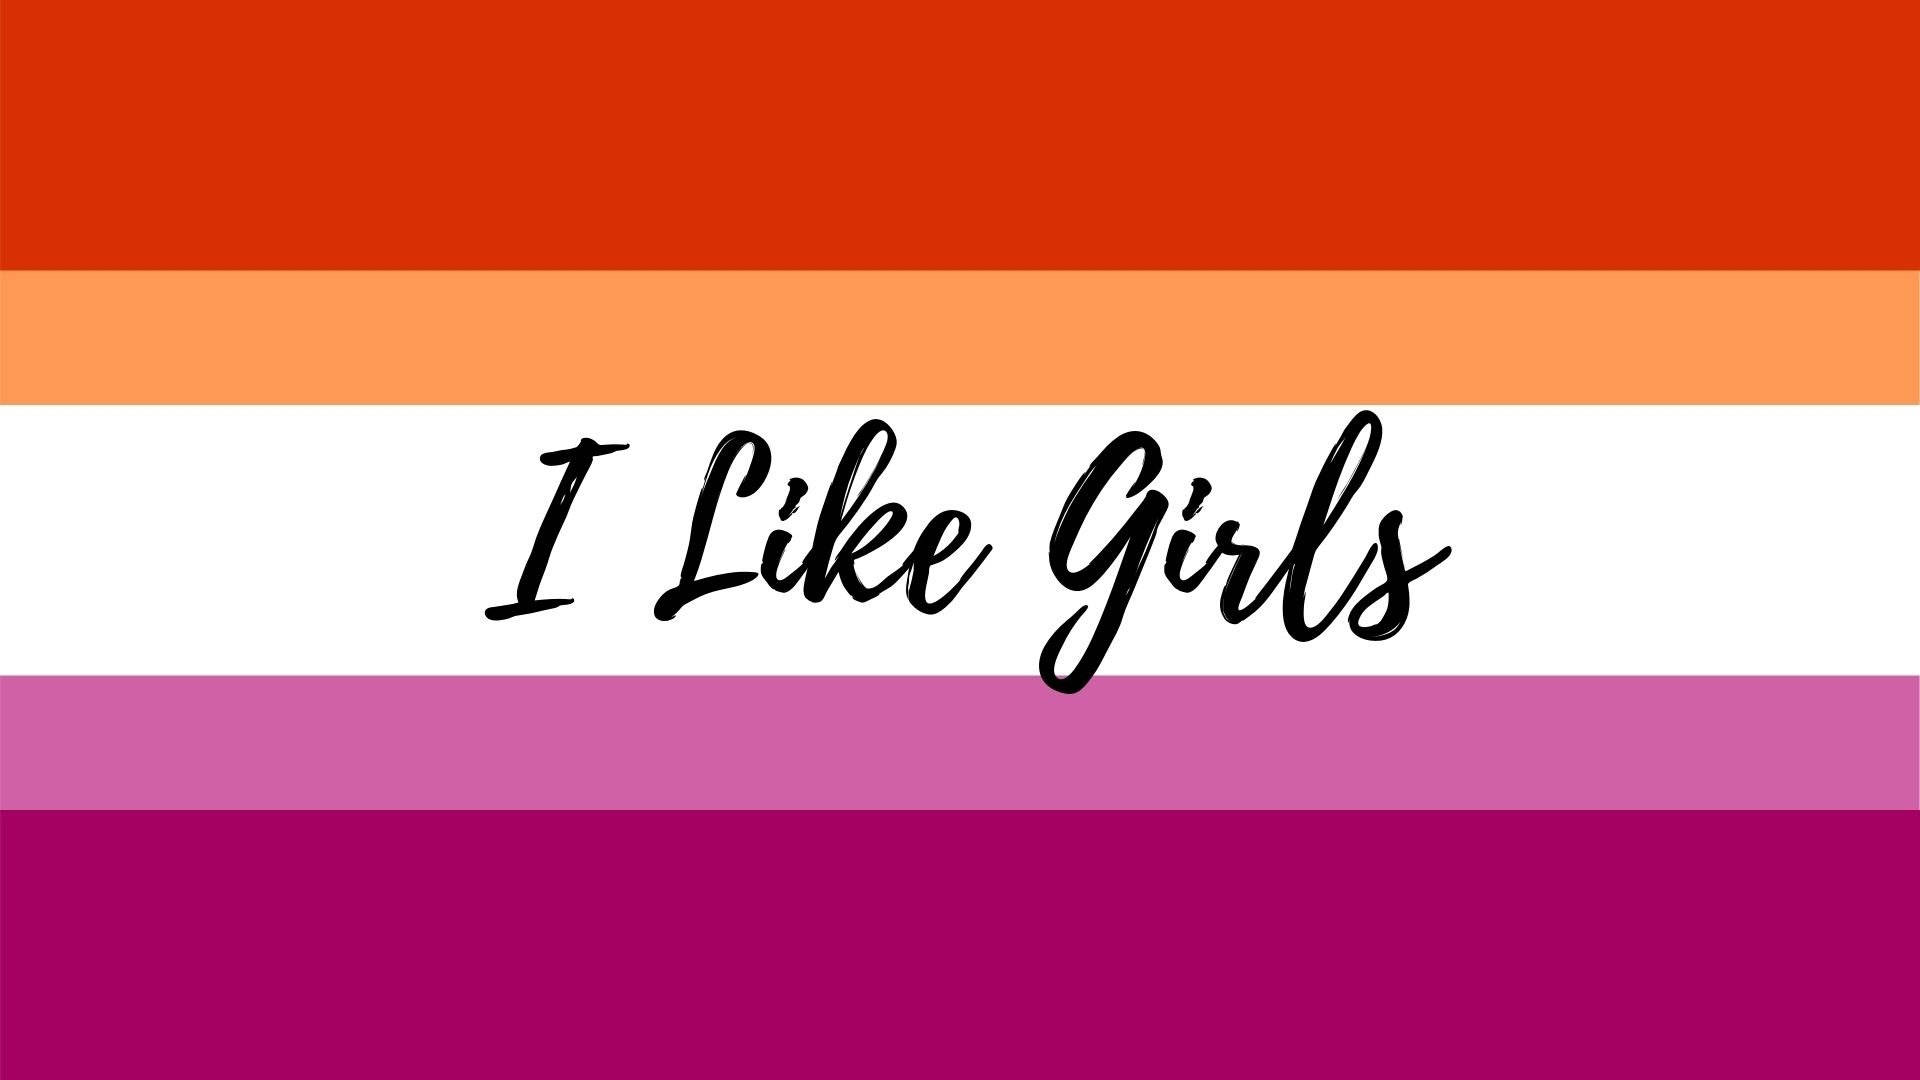 I Like Girls Lesbian Flag